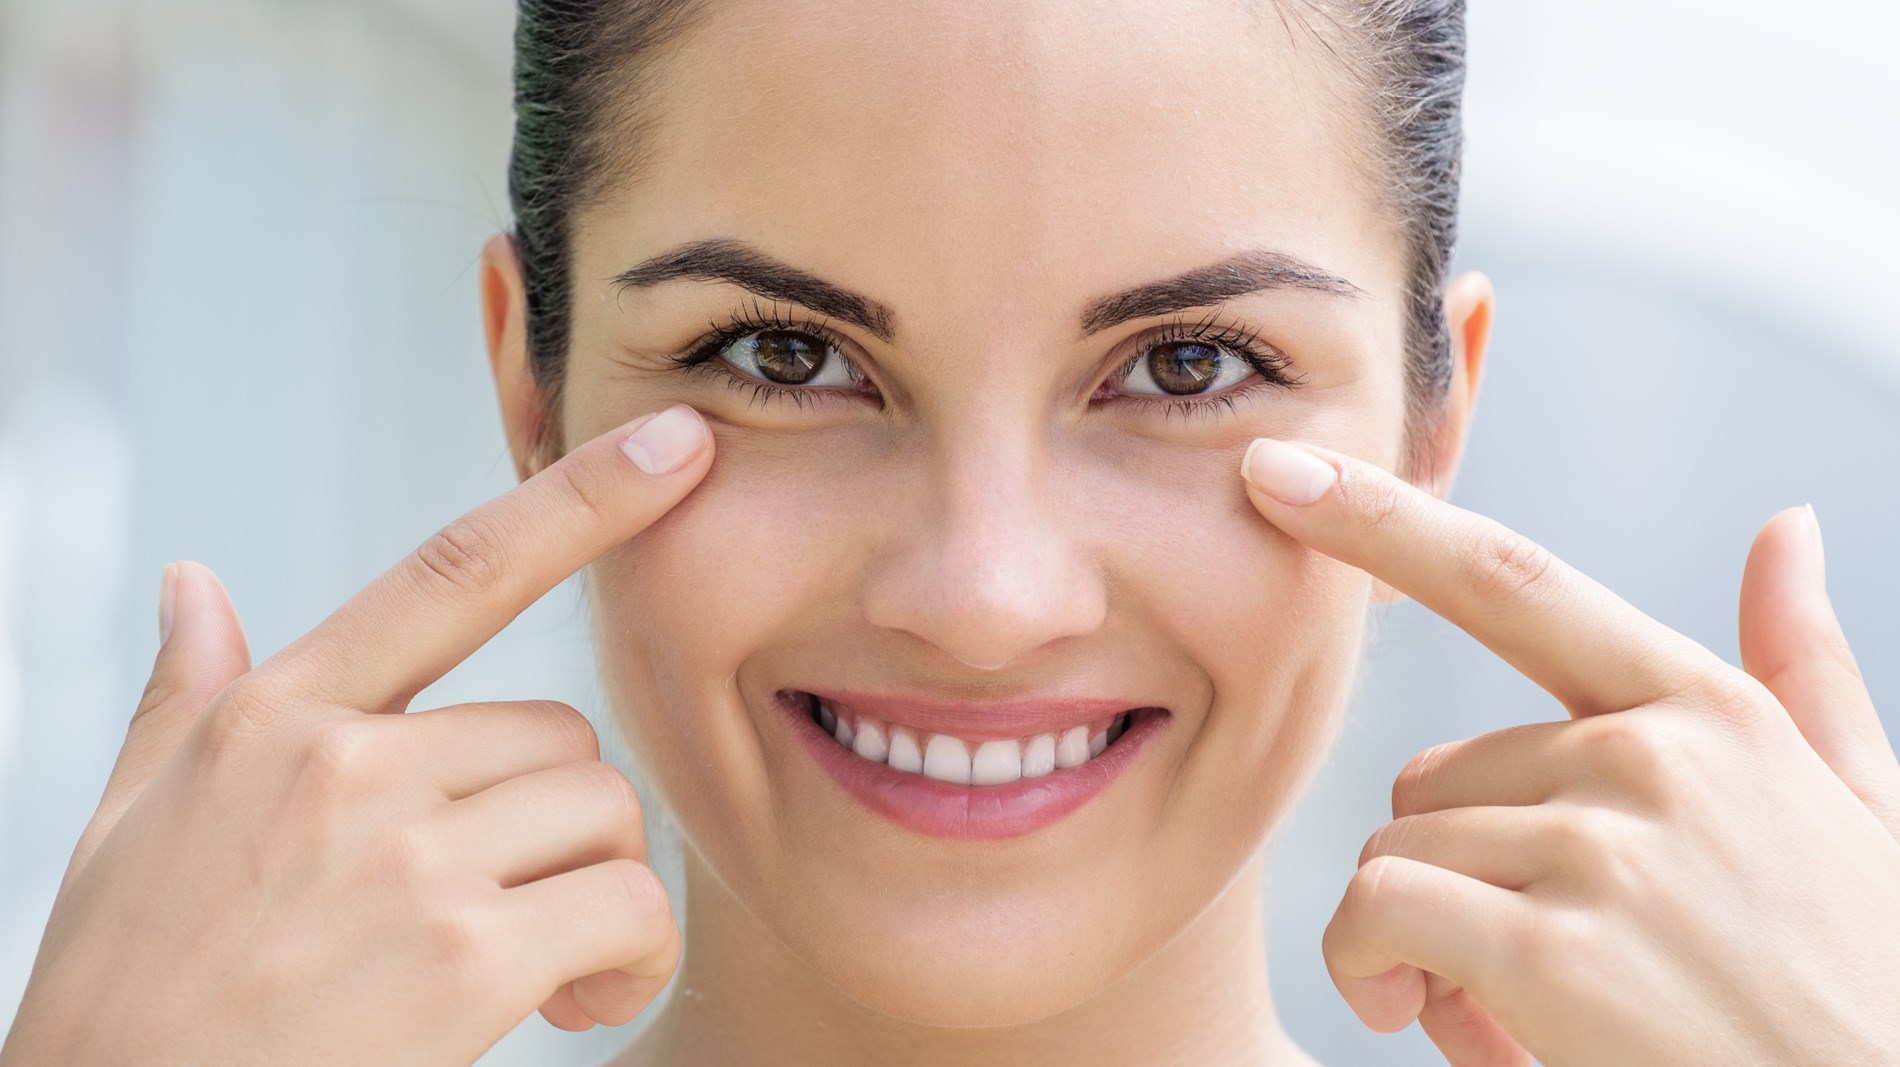 نصائح لرعاية الجلد حول عينيك(زهرة الخليج)